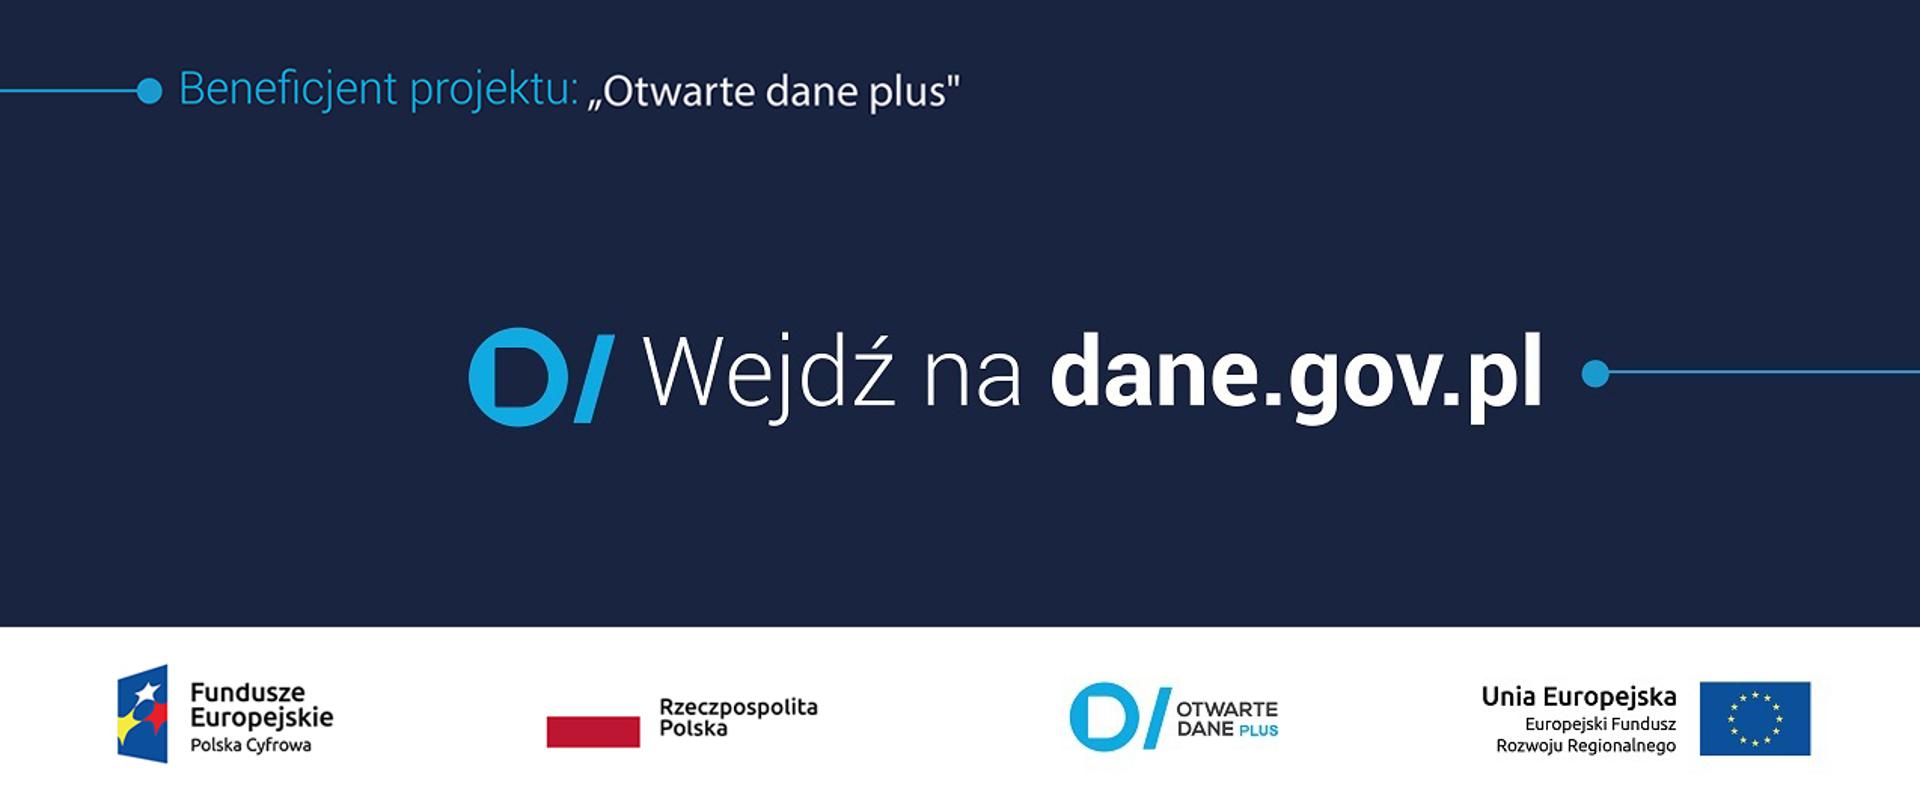 Grafika z napisem: Wejdź na dane.gov.pl